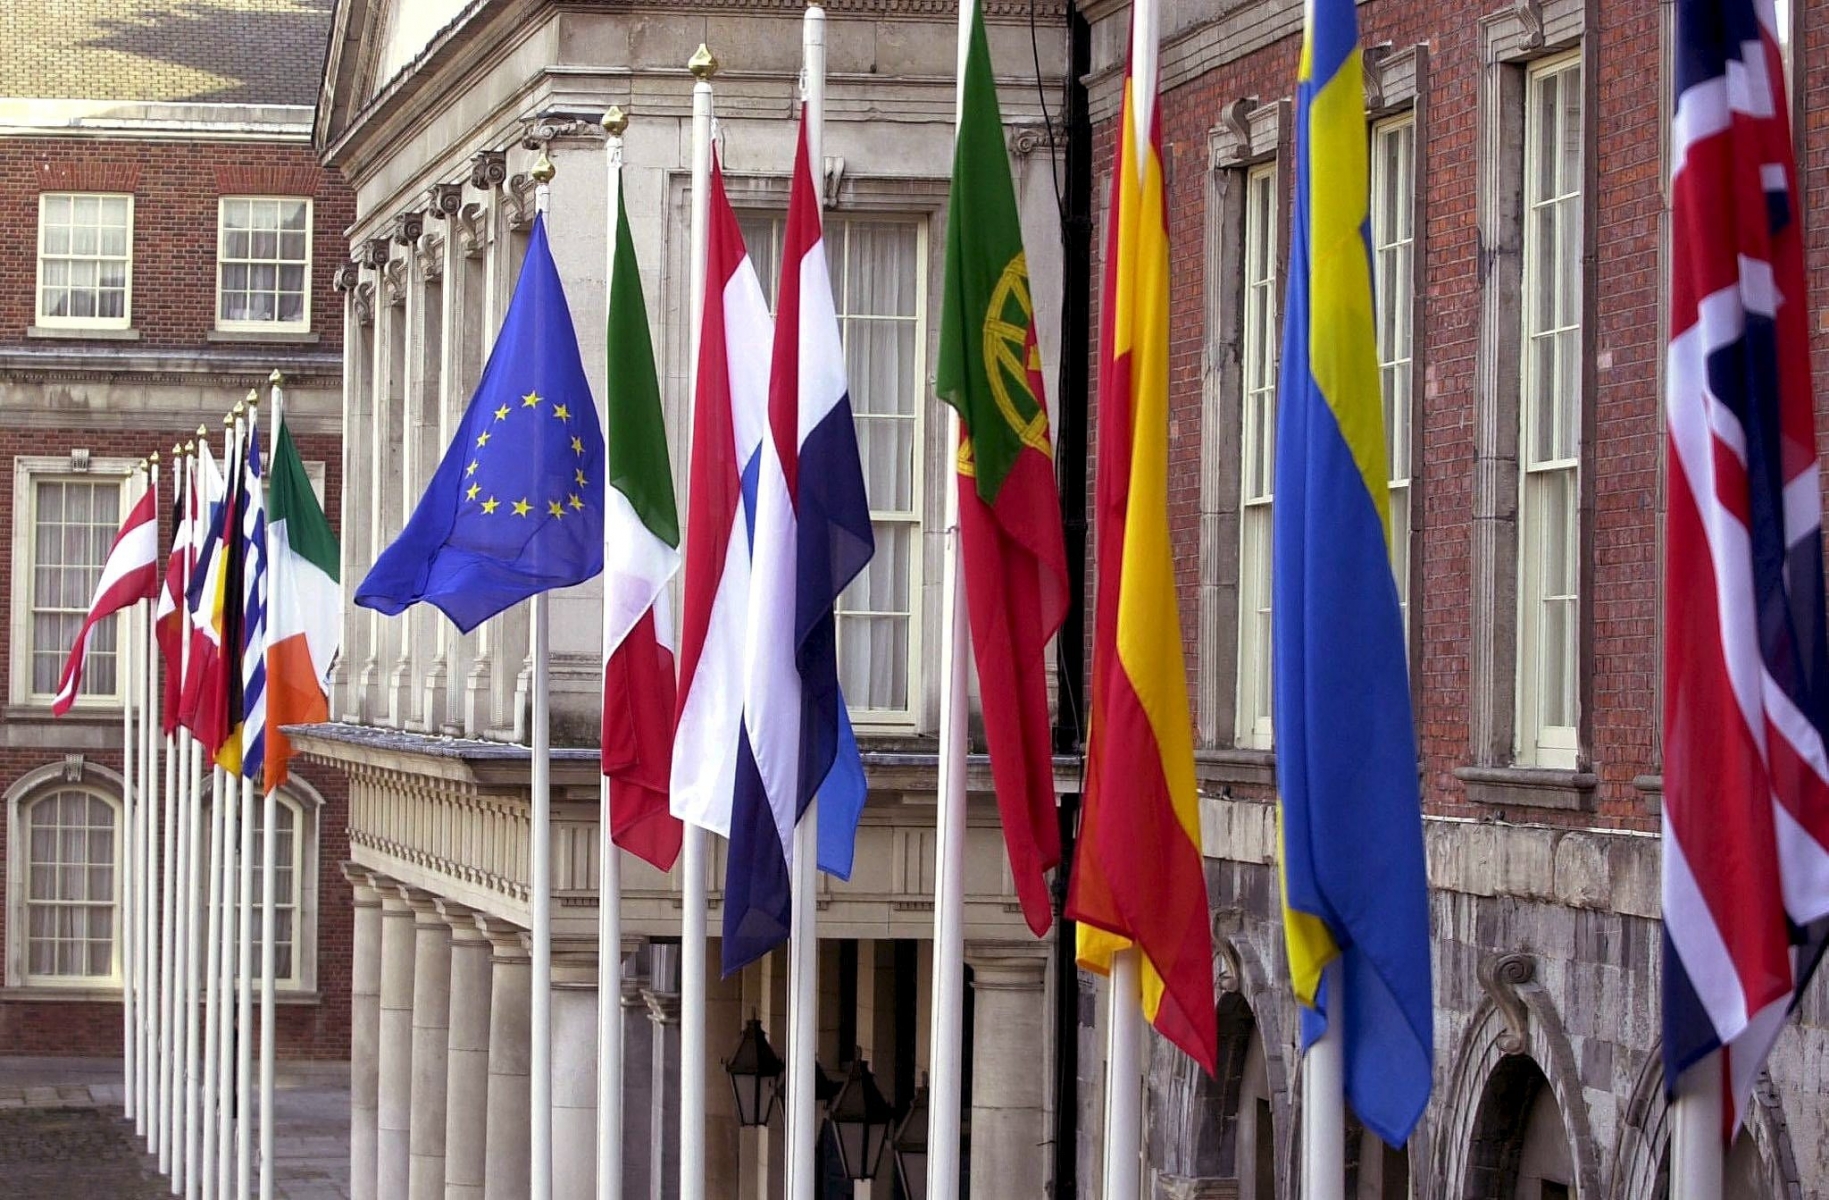 les drapeaux des membres de l'Union europeenne flottant , le 6 janvier 2004, devant le chateau de Dublin en Irlande. 



KEYSTONE/EPA/PA/Haydn West) UNION EUROPEENNE